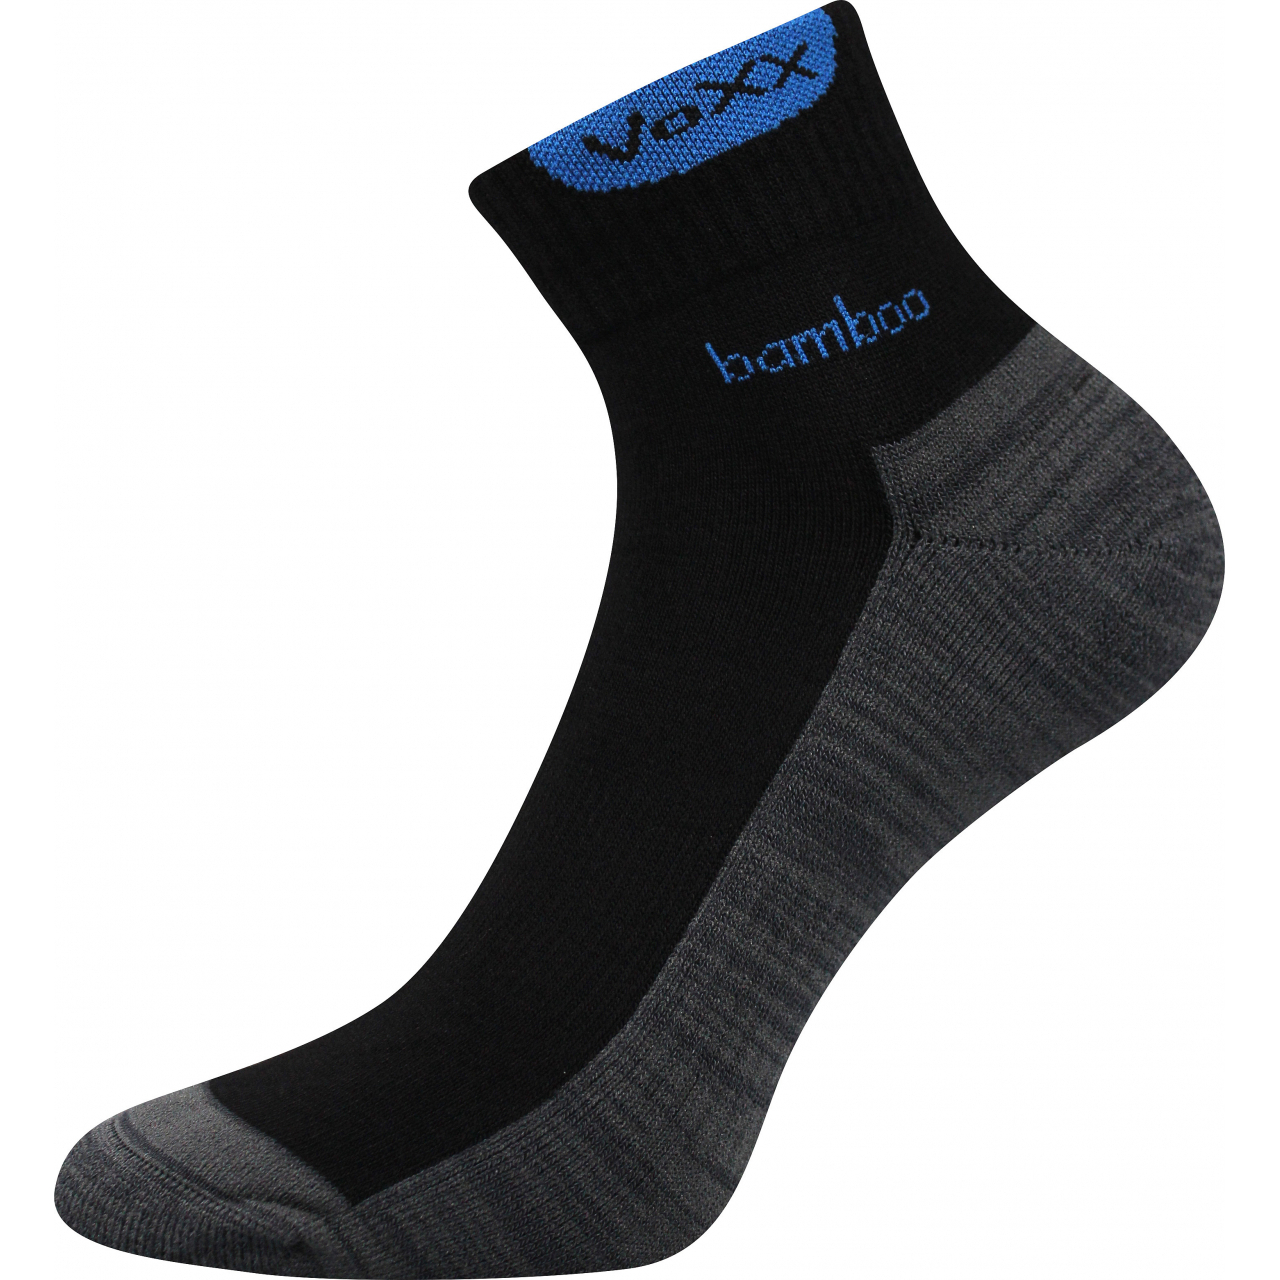 Ponožky sportovní Voxx Brooke - černé-šedé, 39-42